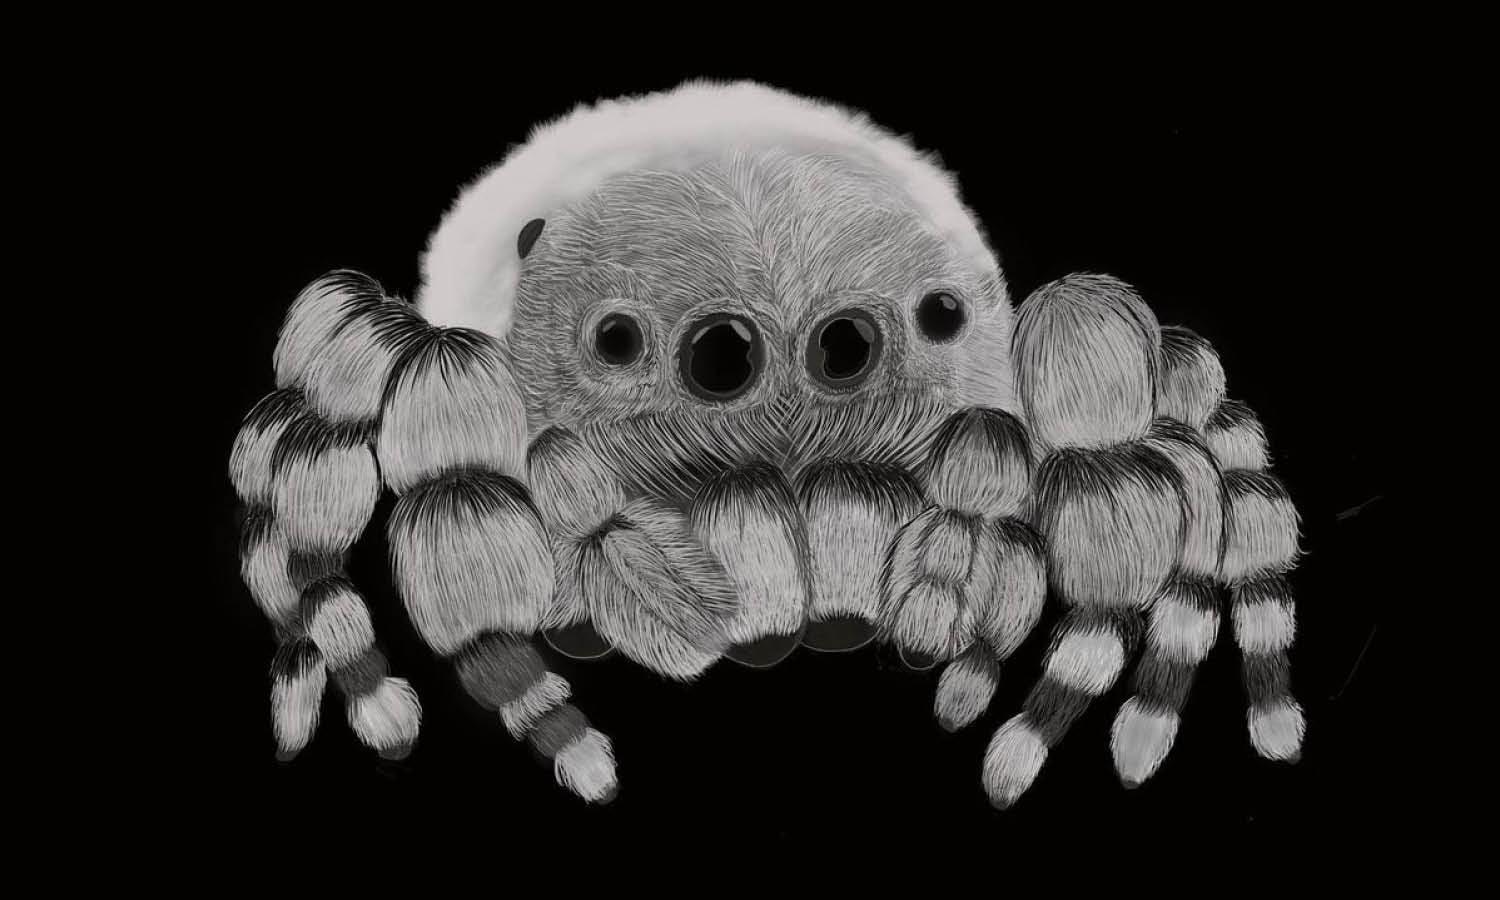 30 Best Spider Illustration Ideas You Should Check - Kreafolk